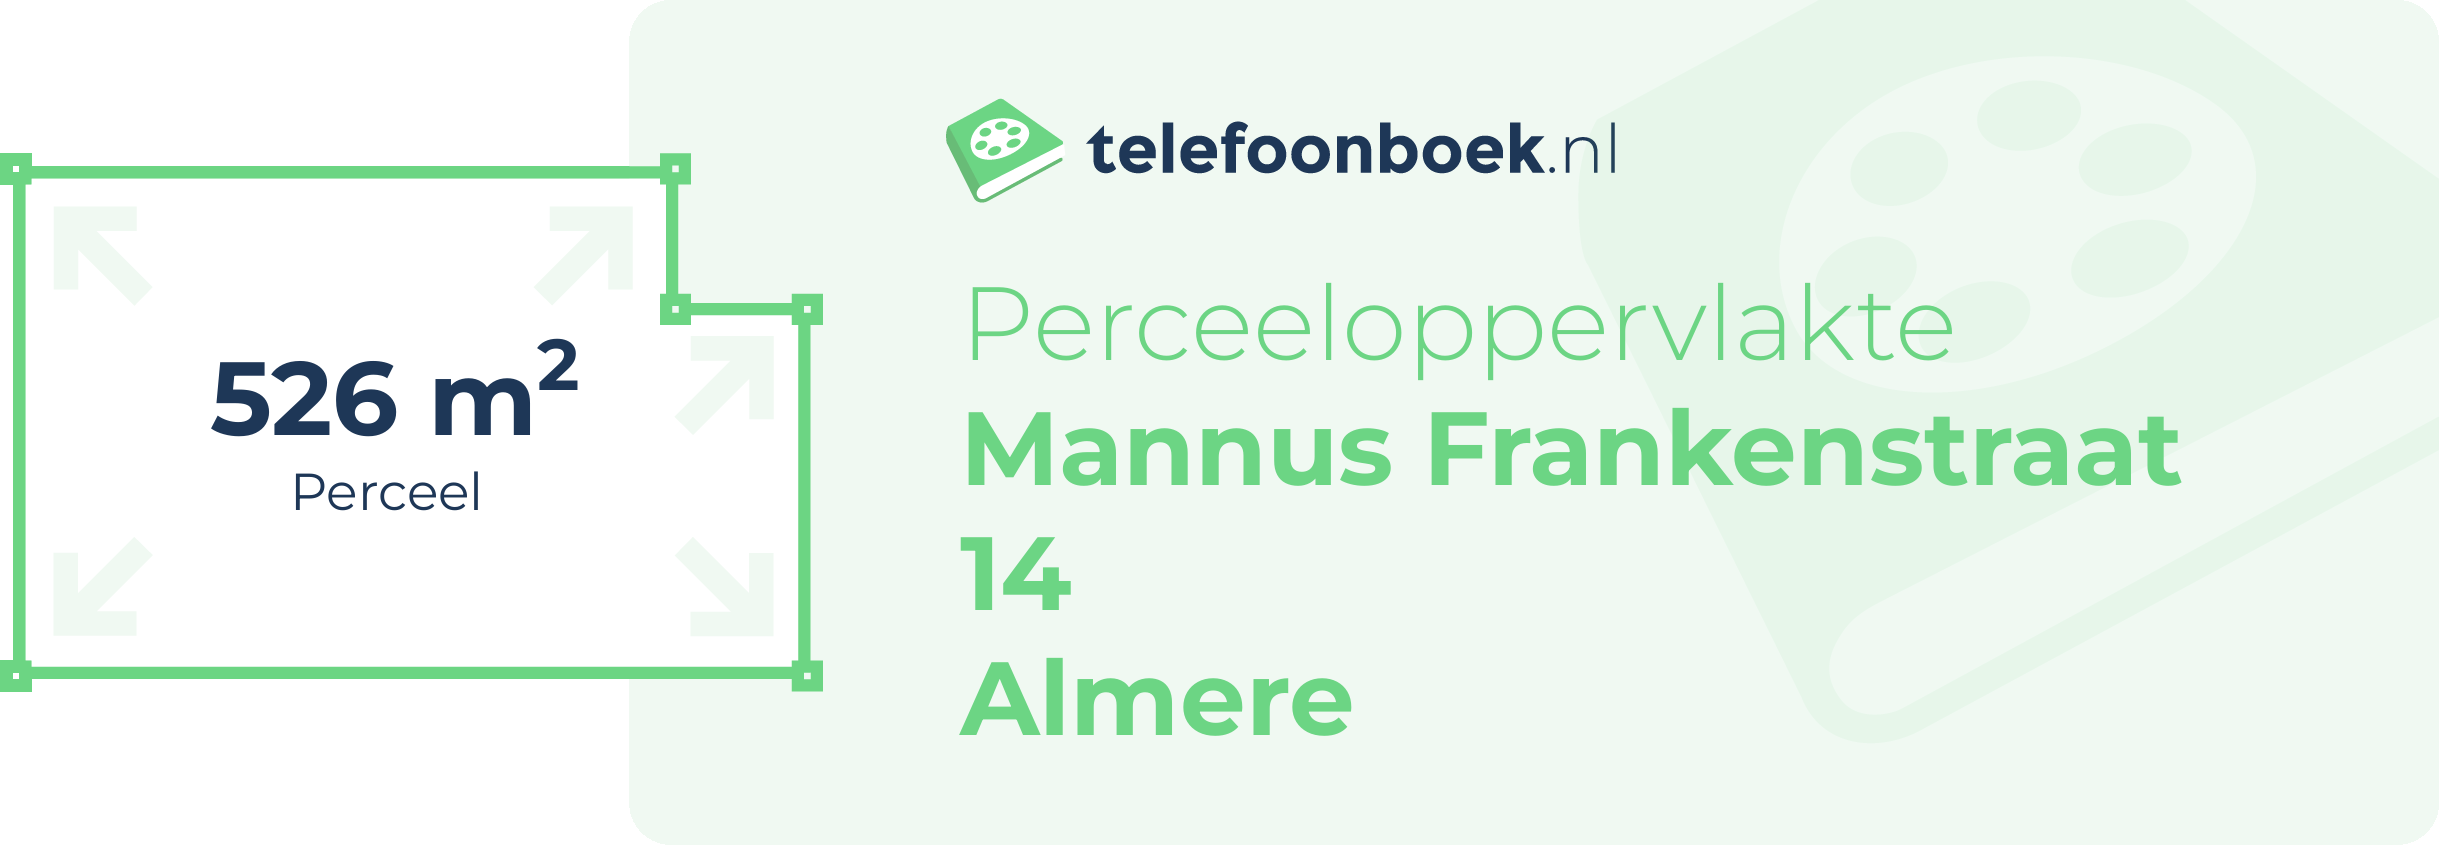 Perceeloppervlakte Mannus Frankenstraat 14 Almere